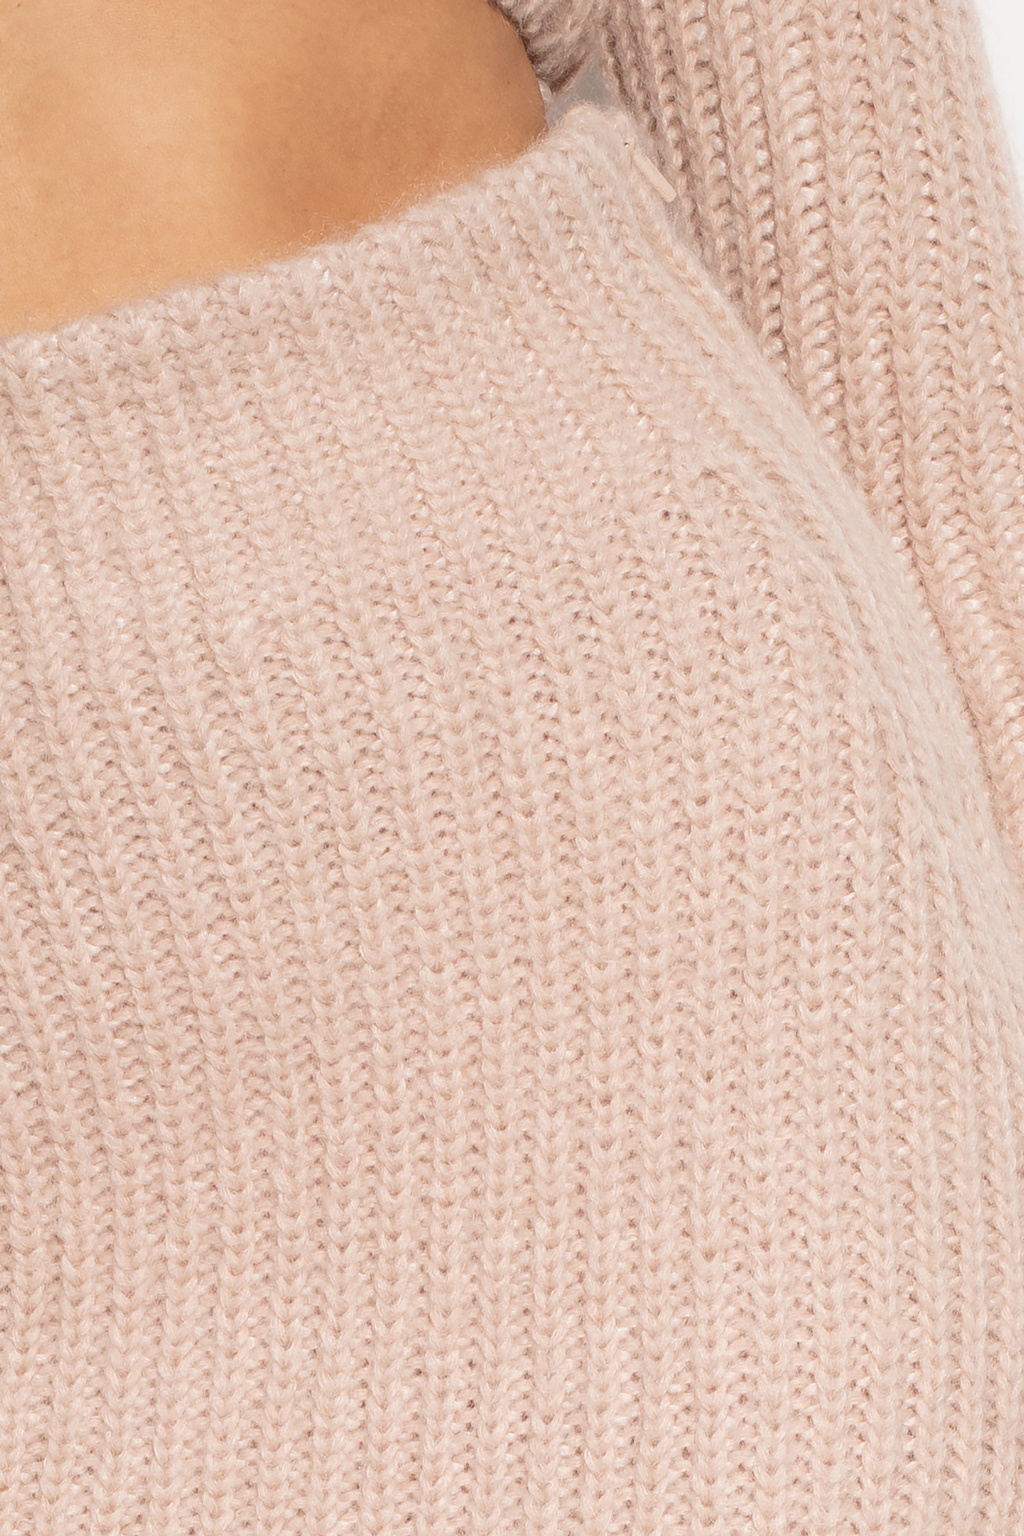 Fendi Light Brown Wool Knit Logo Monogram Turtleneck Sweater M